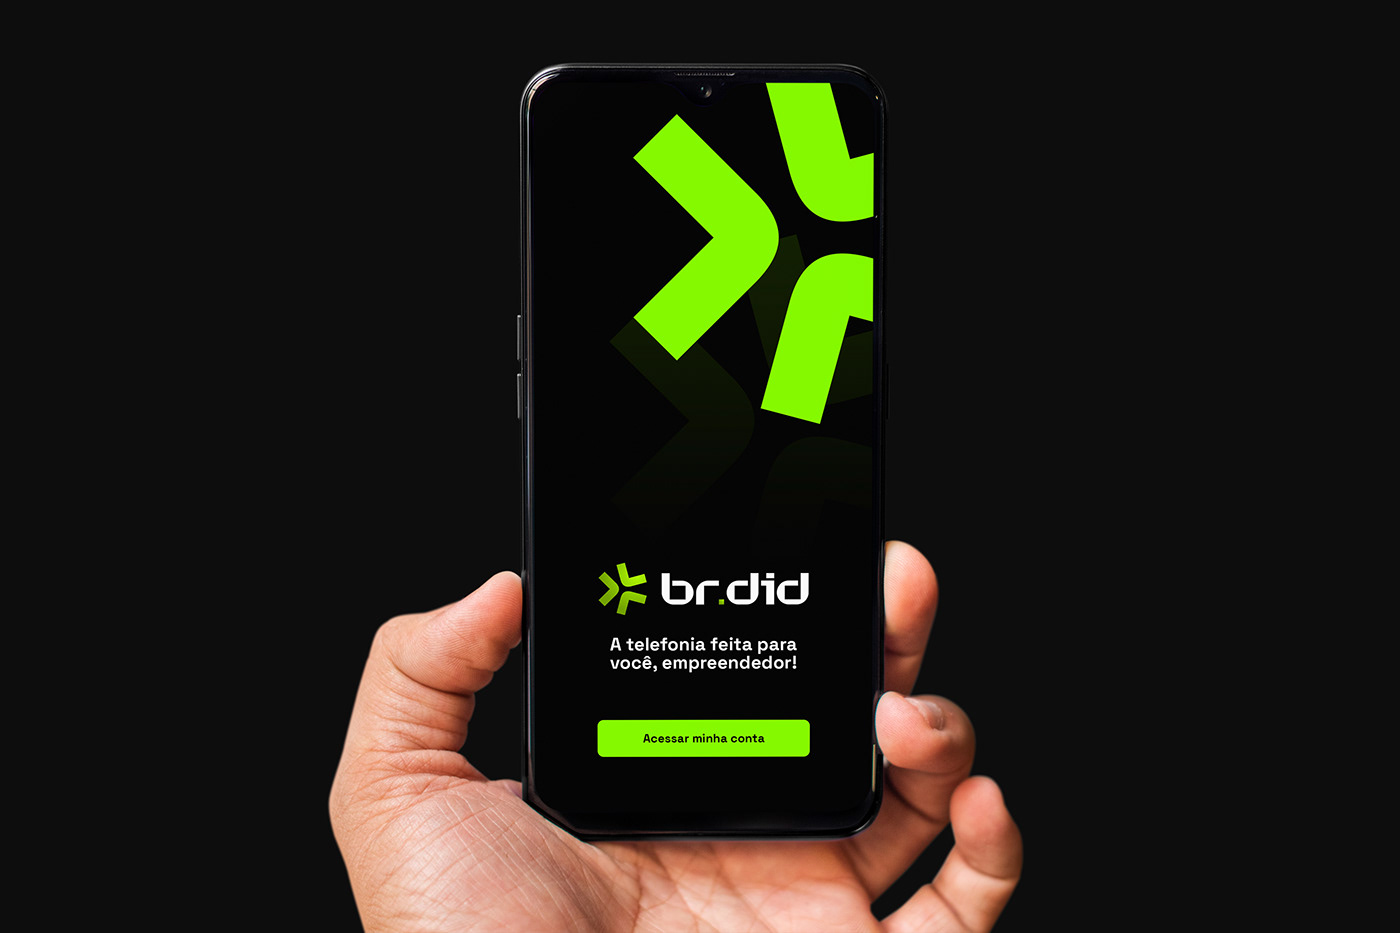 Mão segurando celular com app BRDID